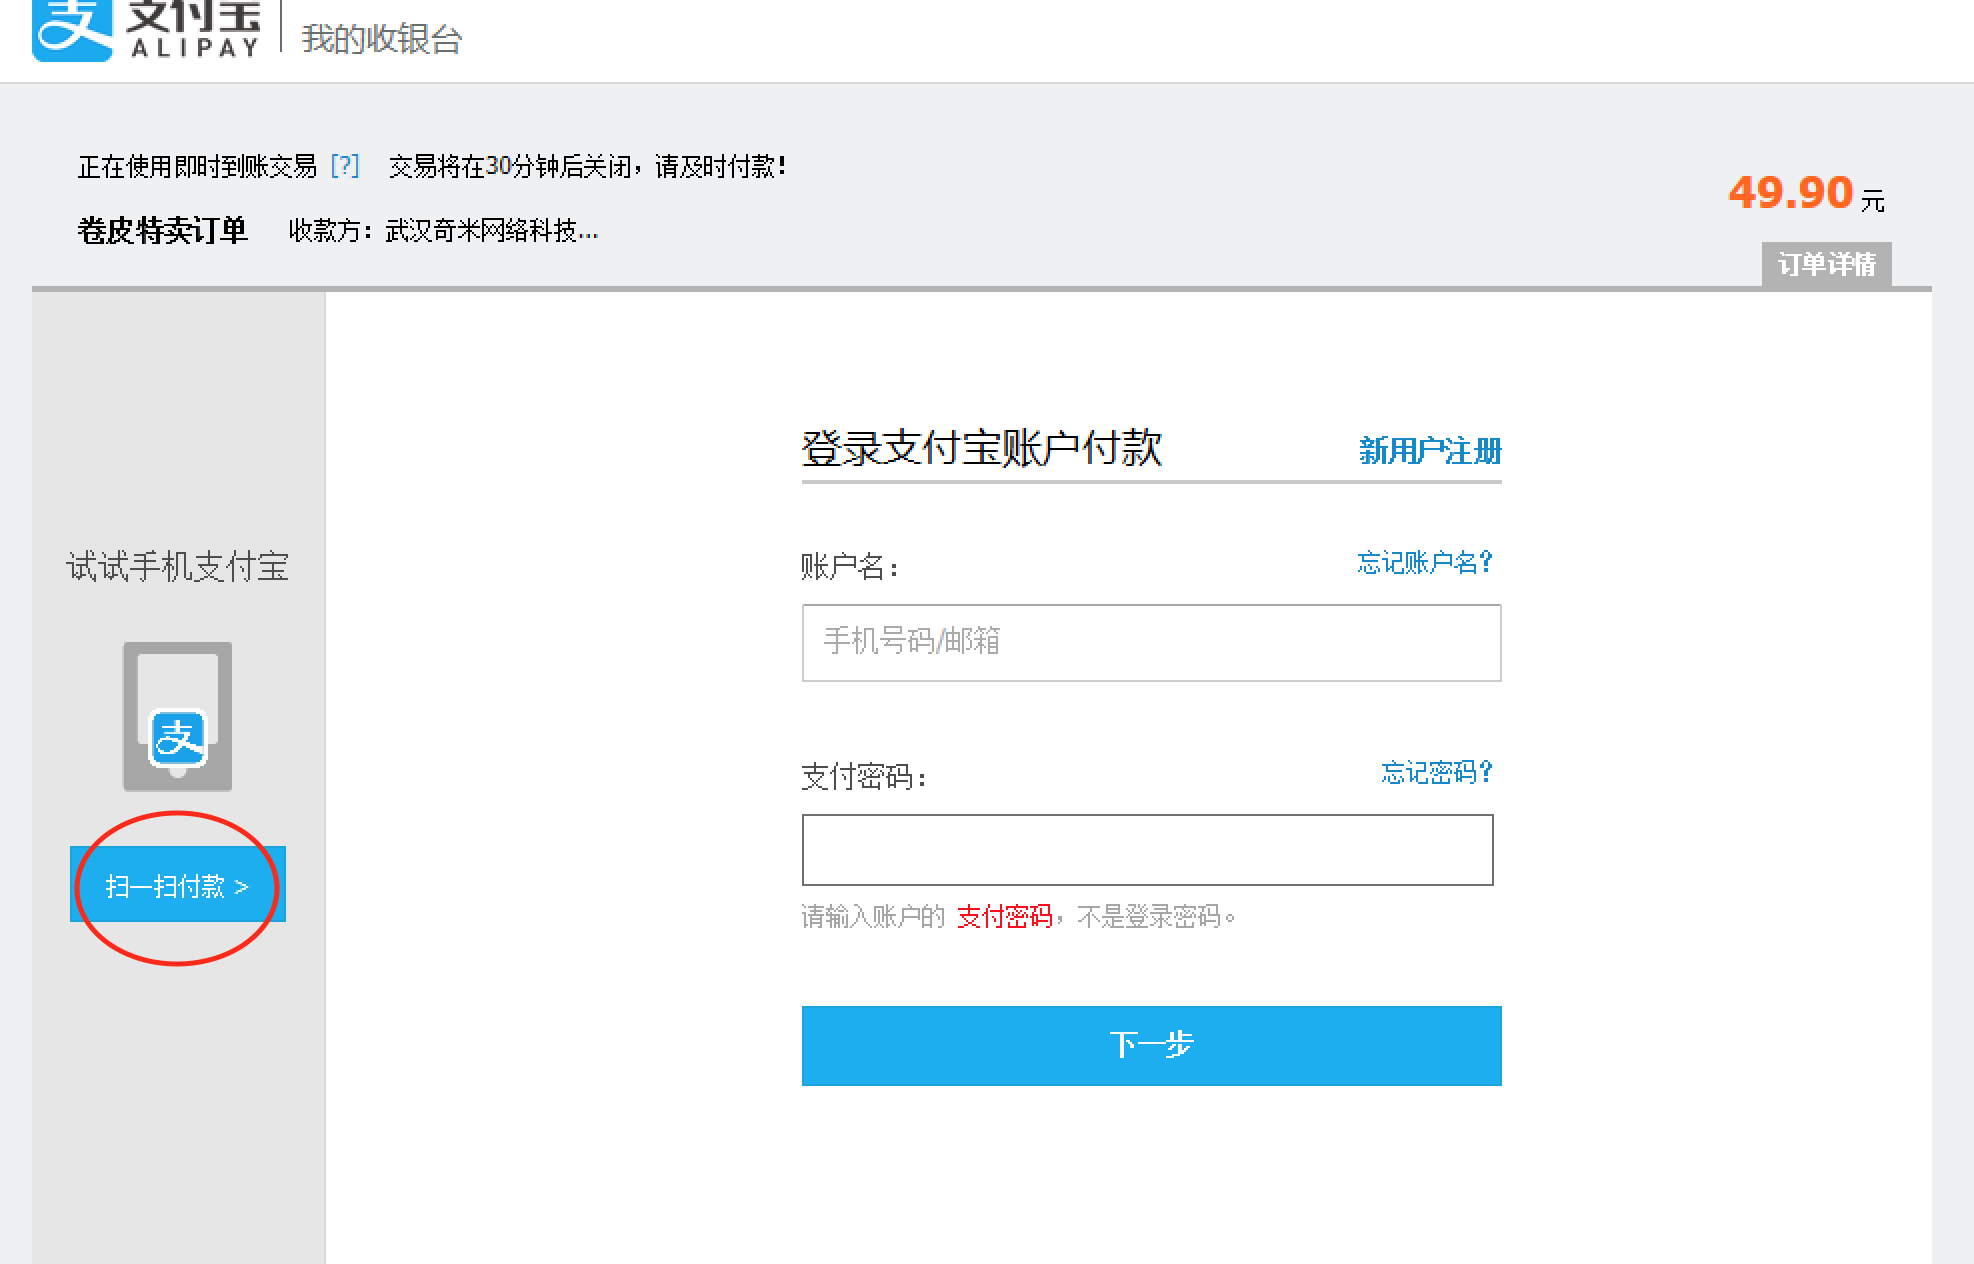 thanh toán Alipay mua hàng forever21.com, hm.com, zara.com, 